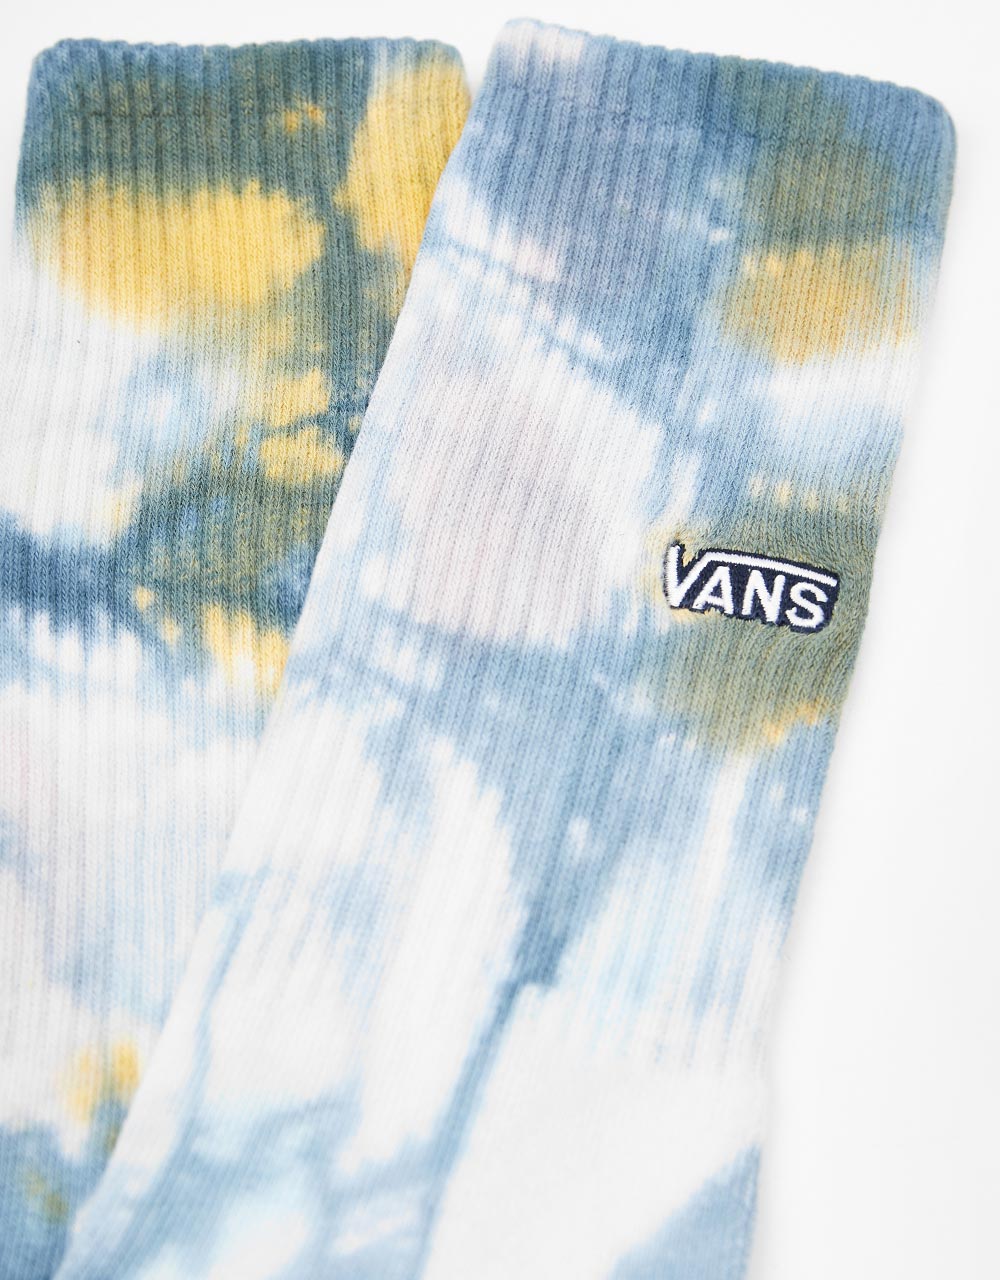 Vans Seasonal Tie Dye Crew Socks - Blue Glow